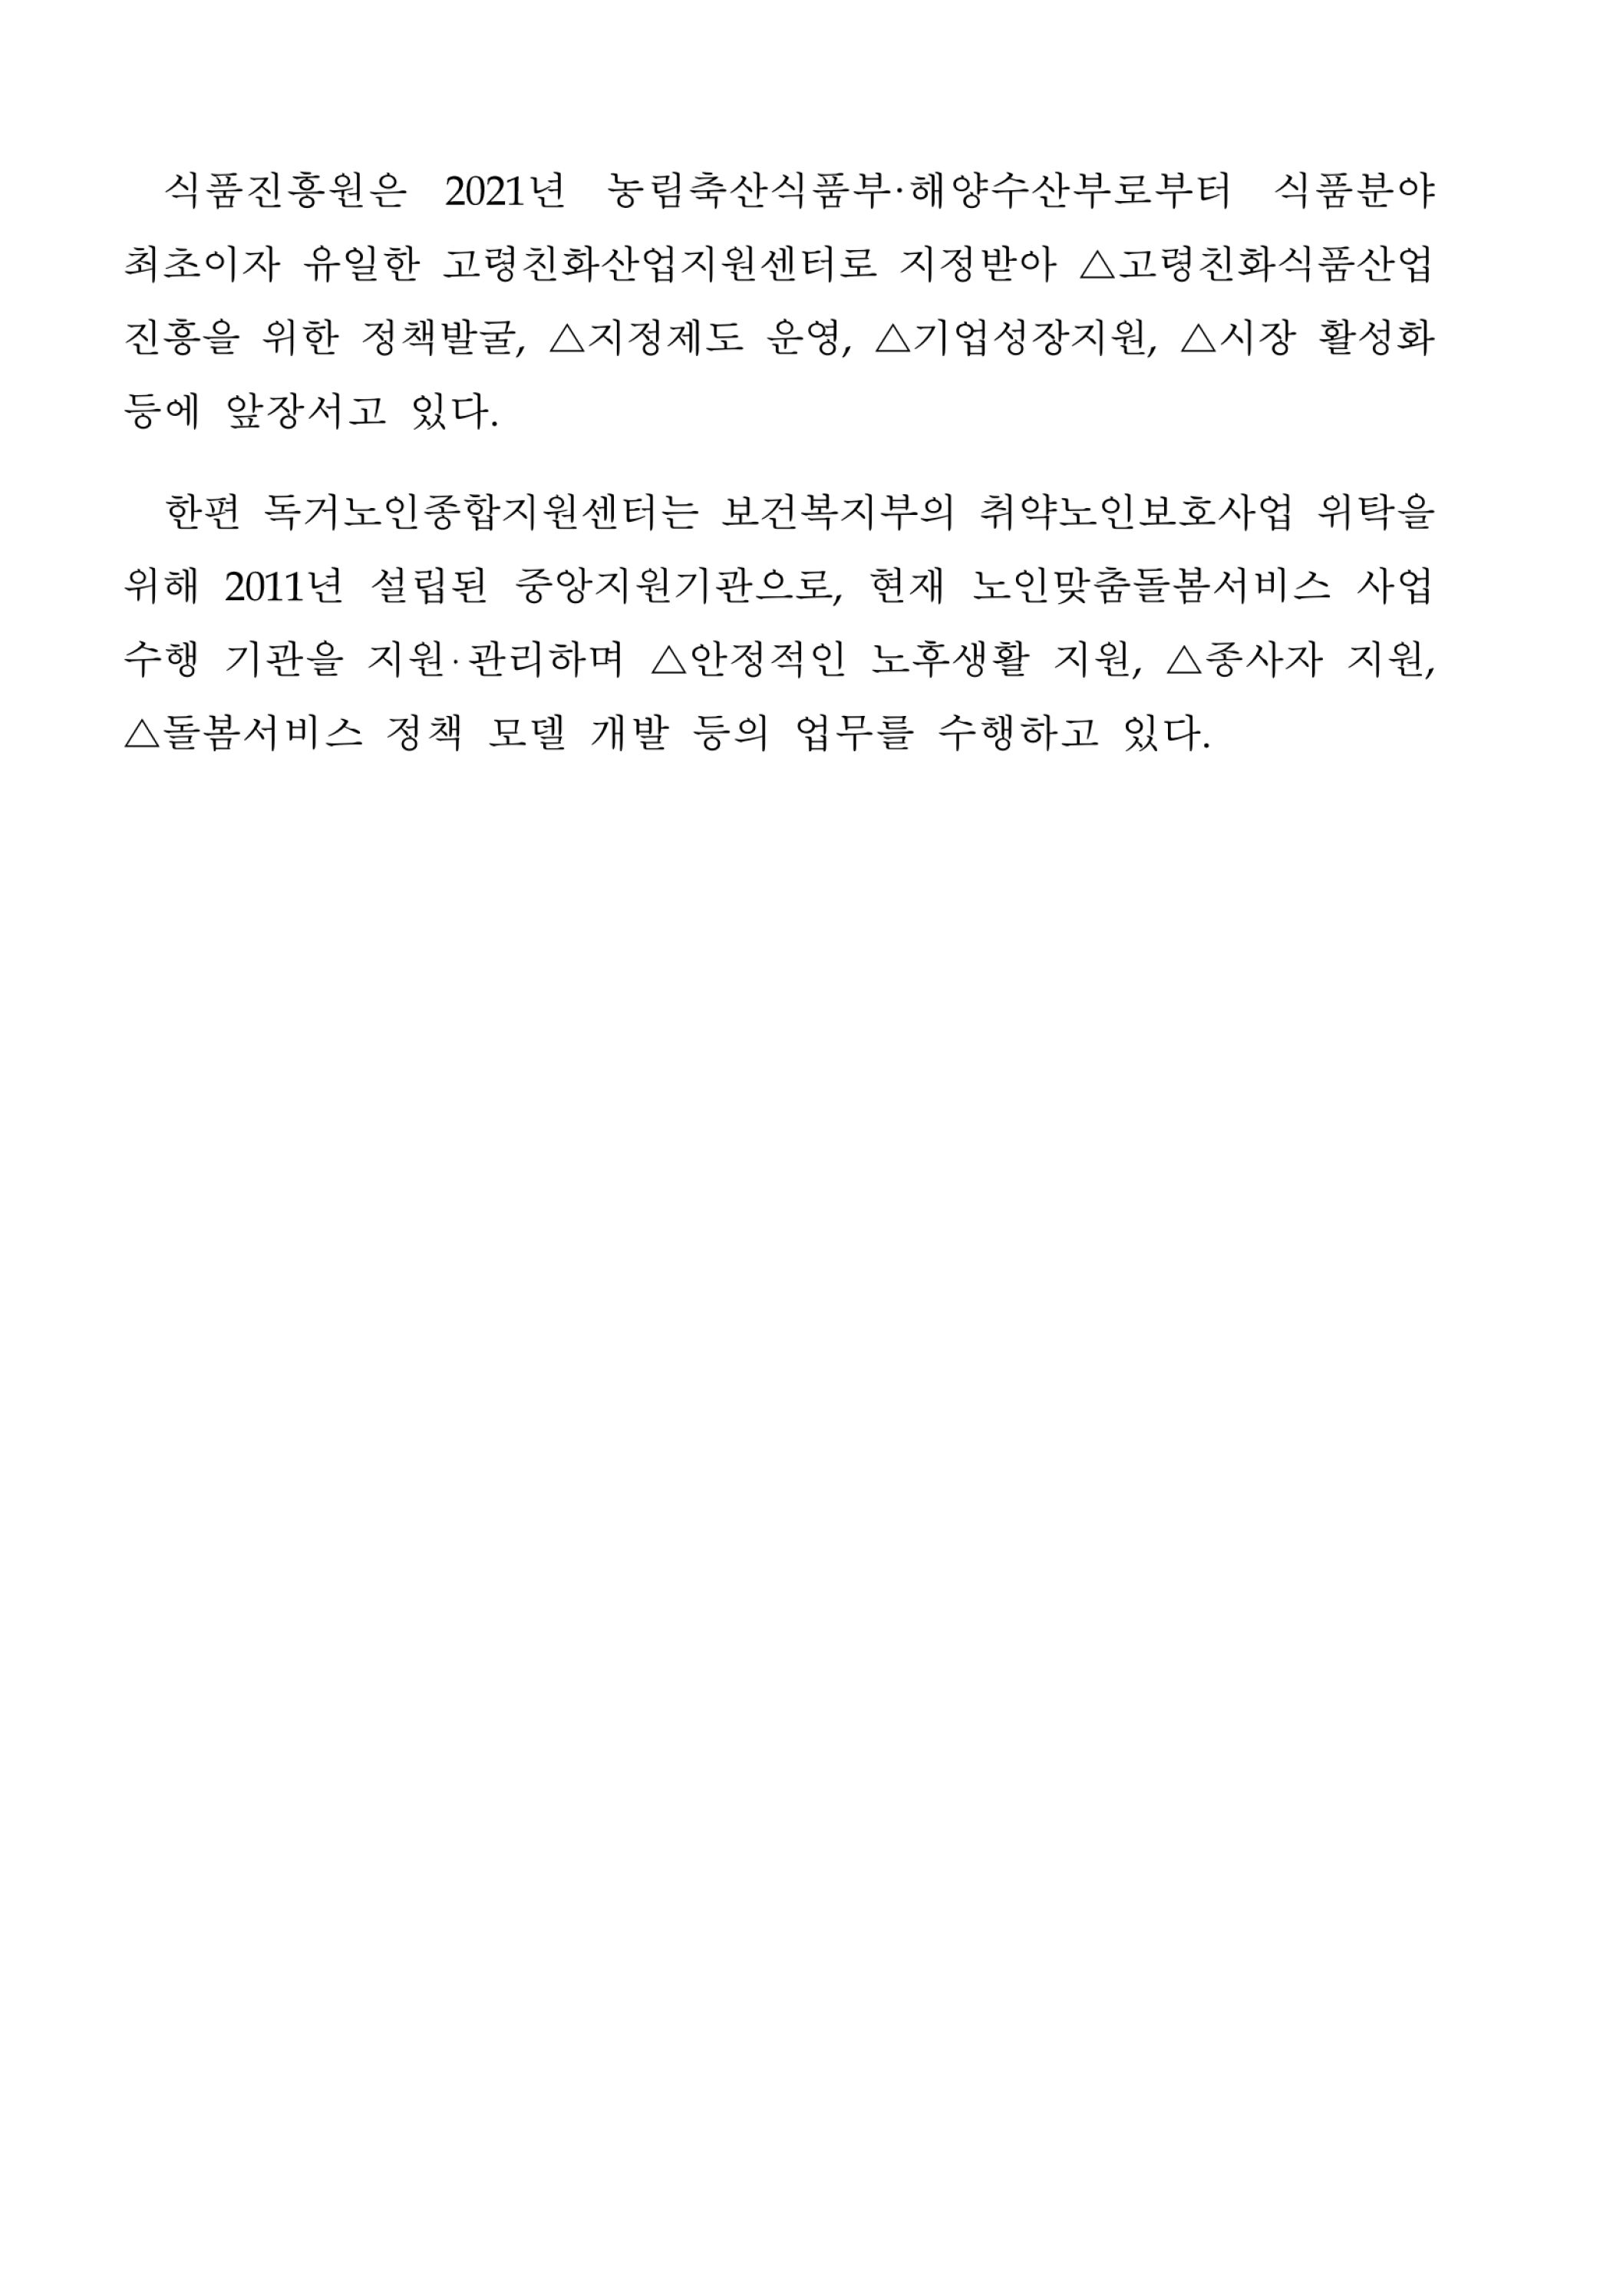 식품진흥원, 독거노인종합지원센터와 업무협약 체결 - 자세한 내용은 첨부파일에서 확인